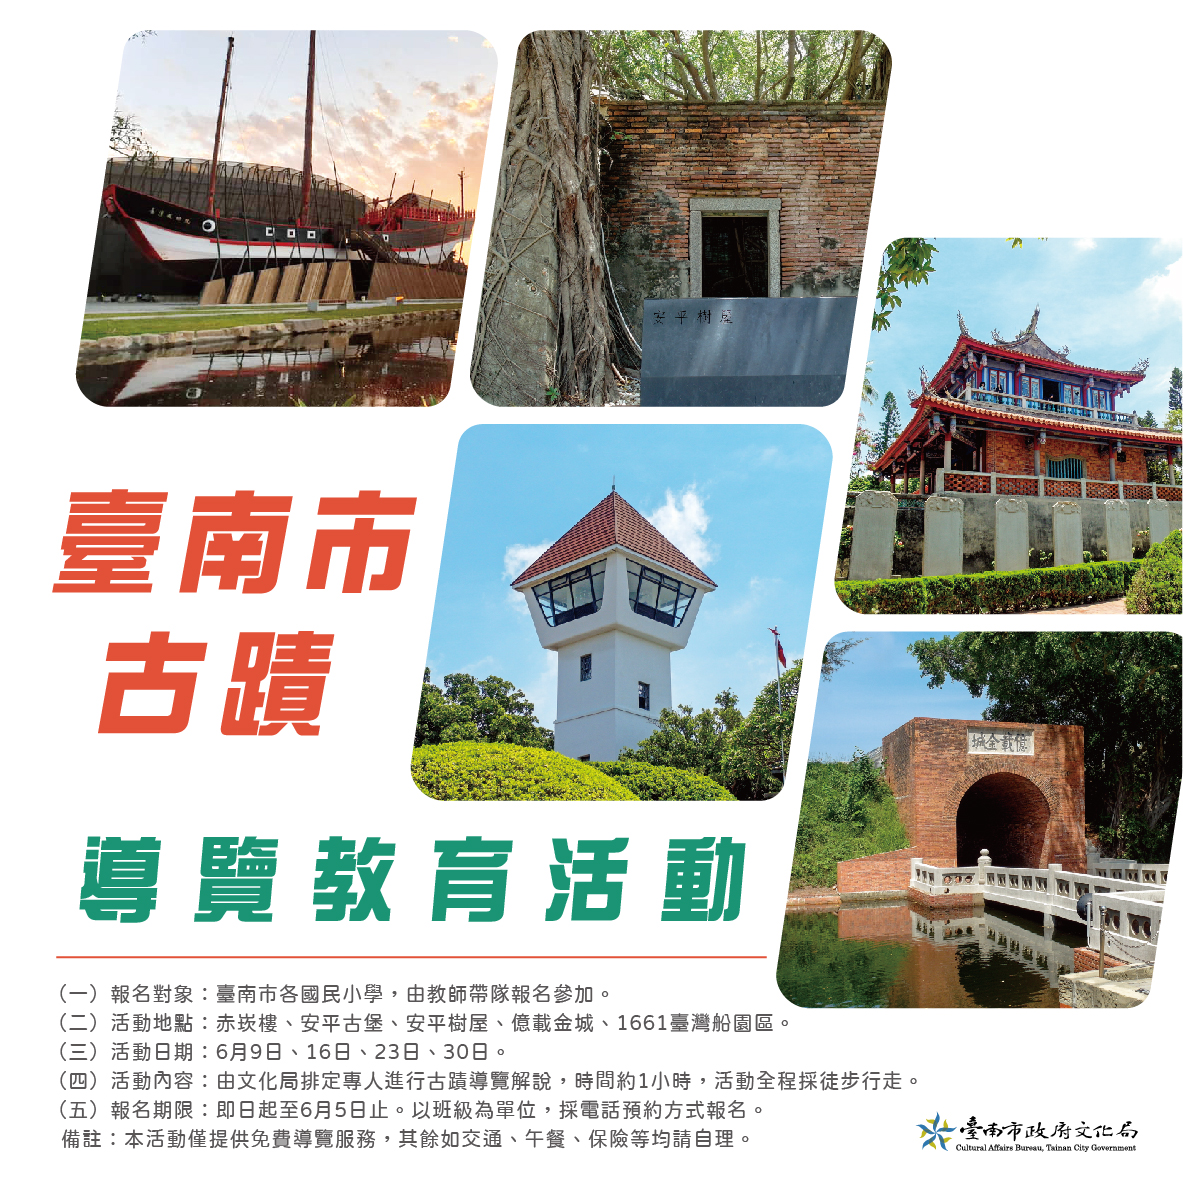 穿梭時空走讀歷史—「臺南市古蹟導覽教育活動」多元學習從小開始 邀您一起來欣賞